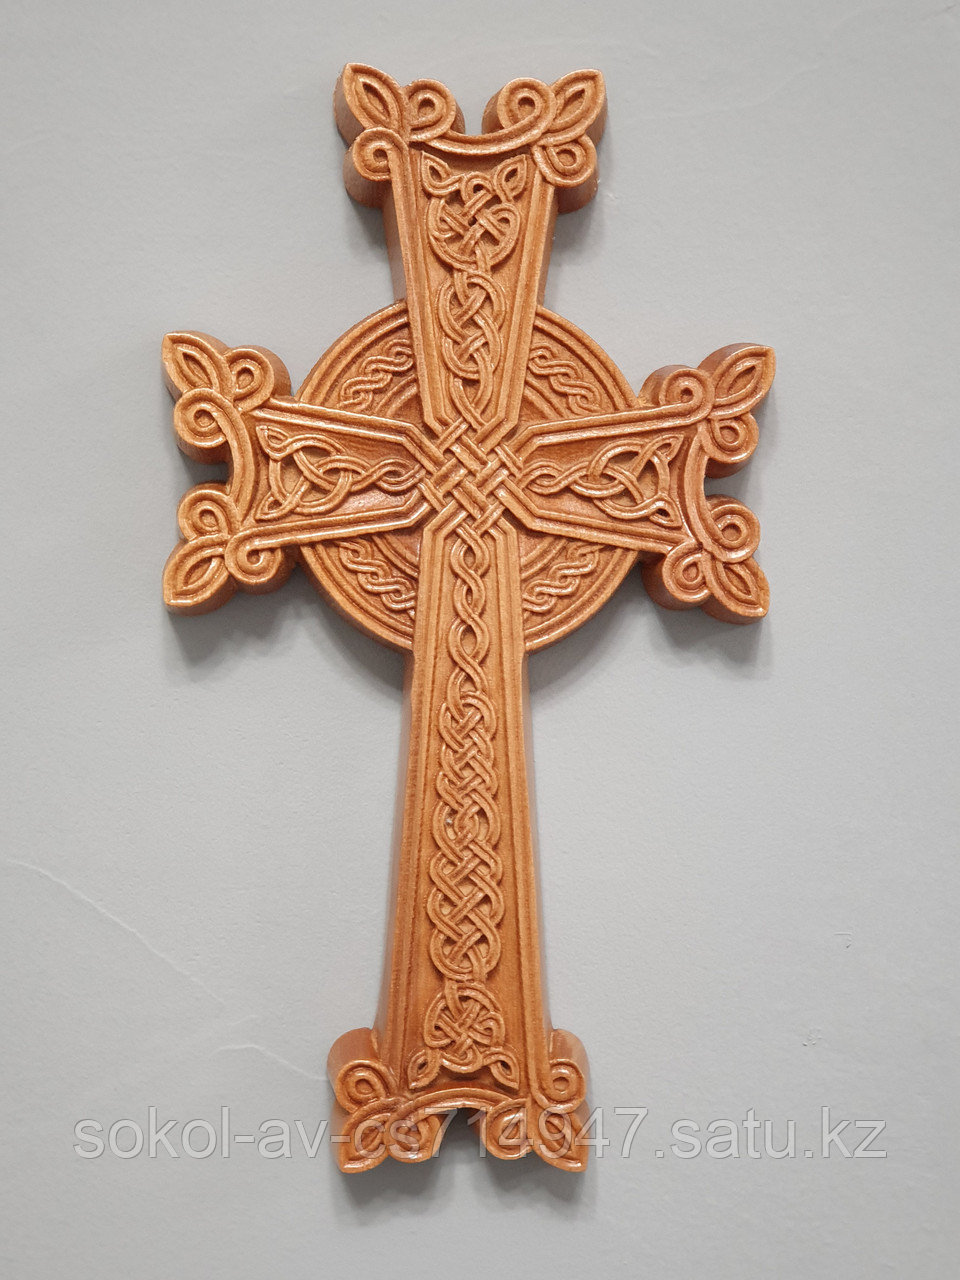 Панно крест резной настенный из дерева Армянский, светлый, 12 х 21.8 см